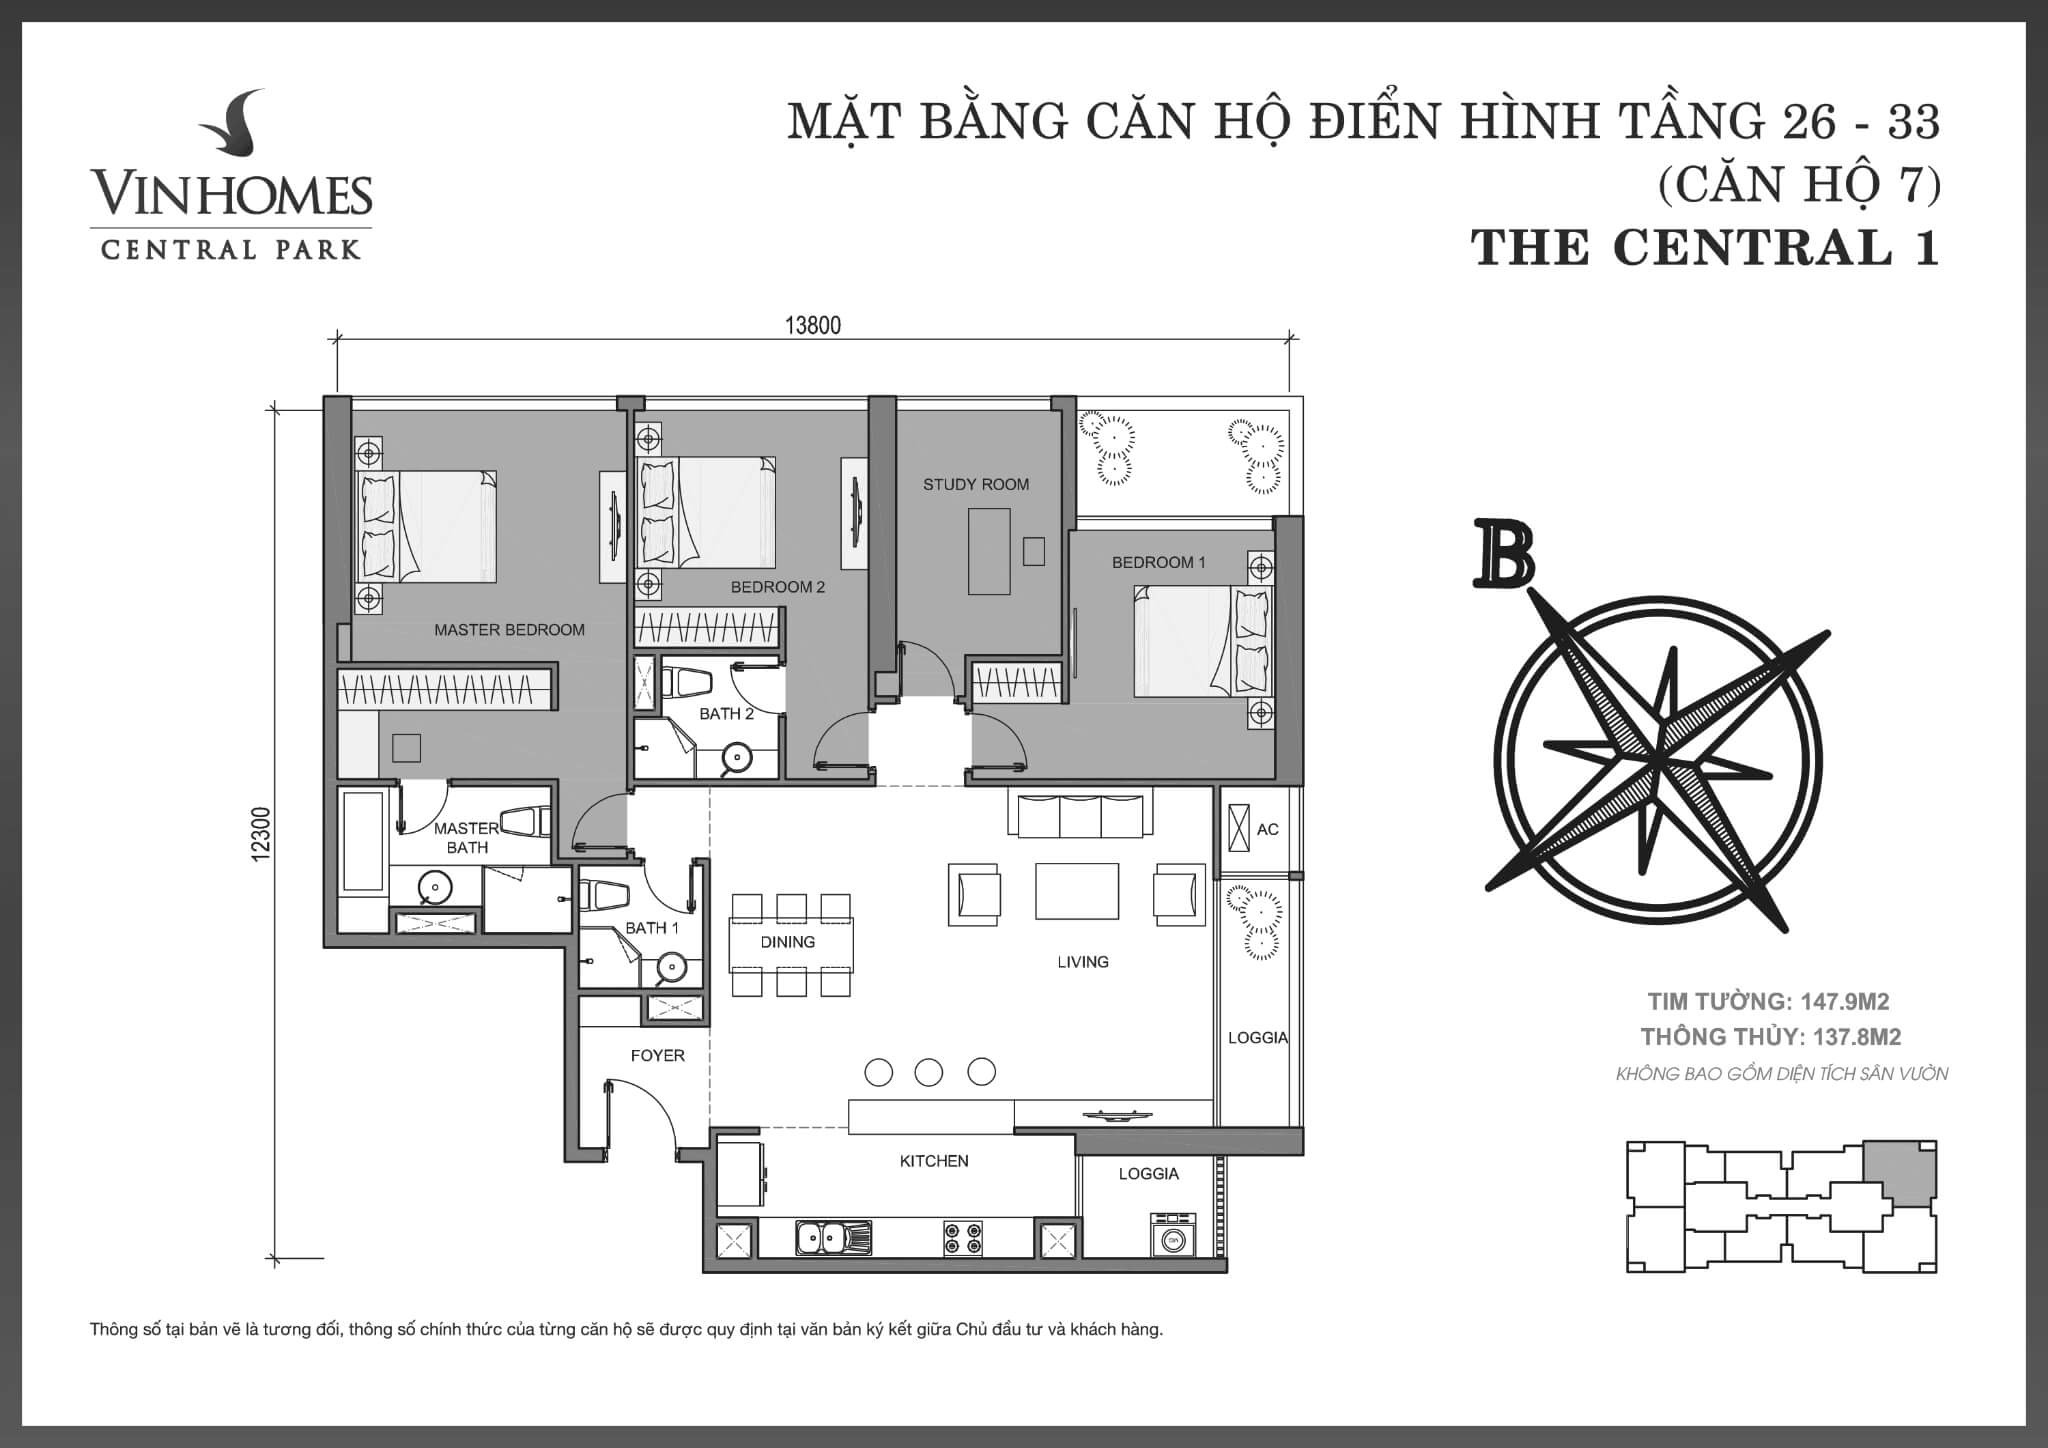 layout căn hộ số 7 tầng 26-33 Central 1